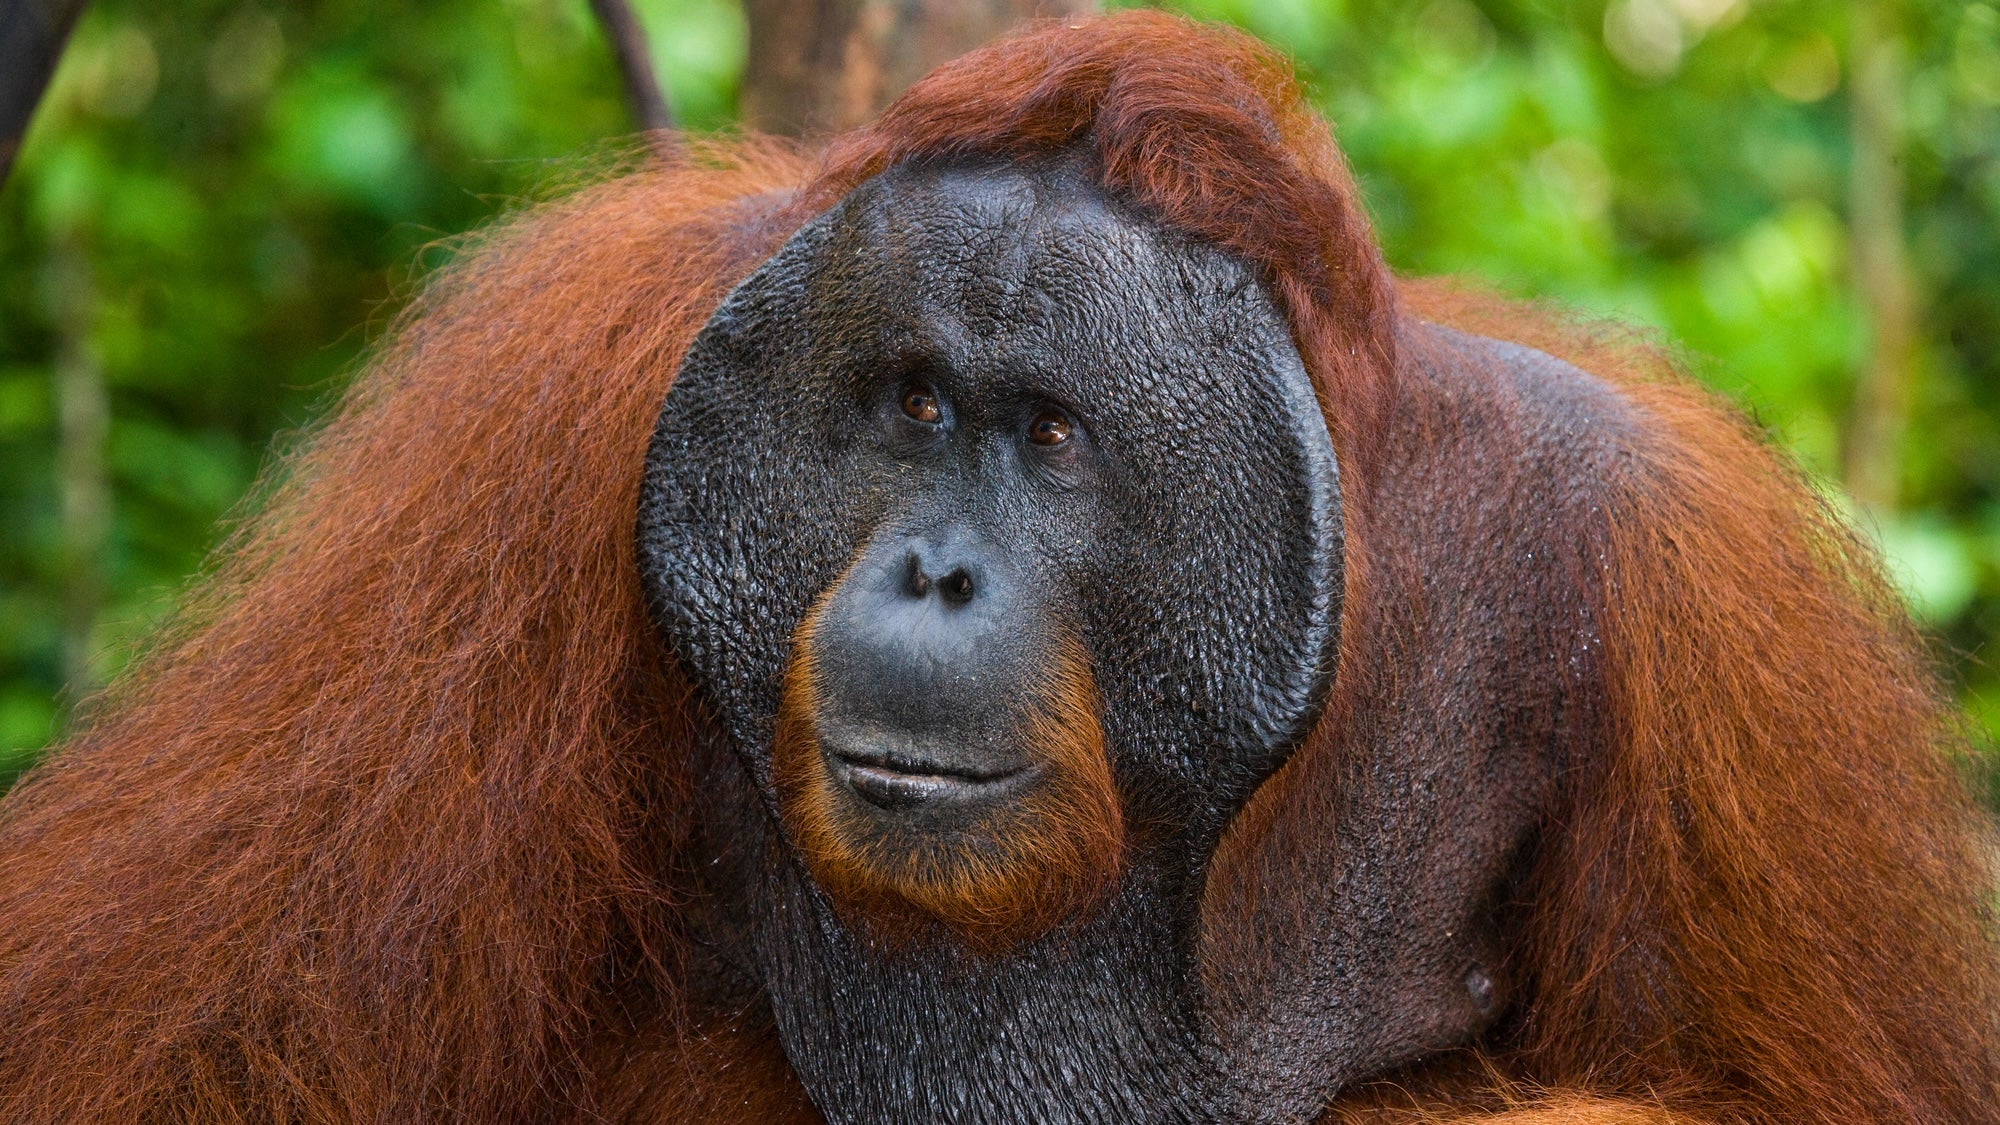 Orangutanın açık yarayı tedavi etmek için bitki kullandığı gözlemlendi